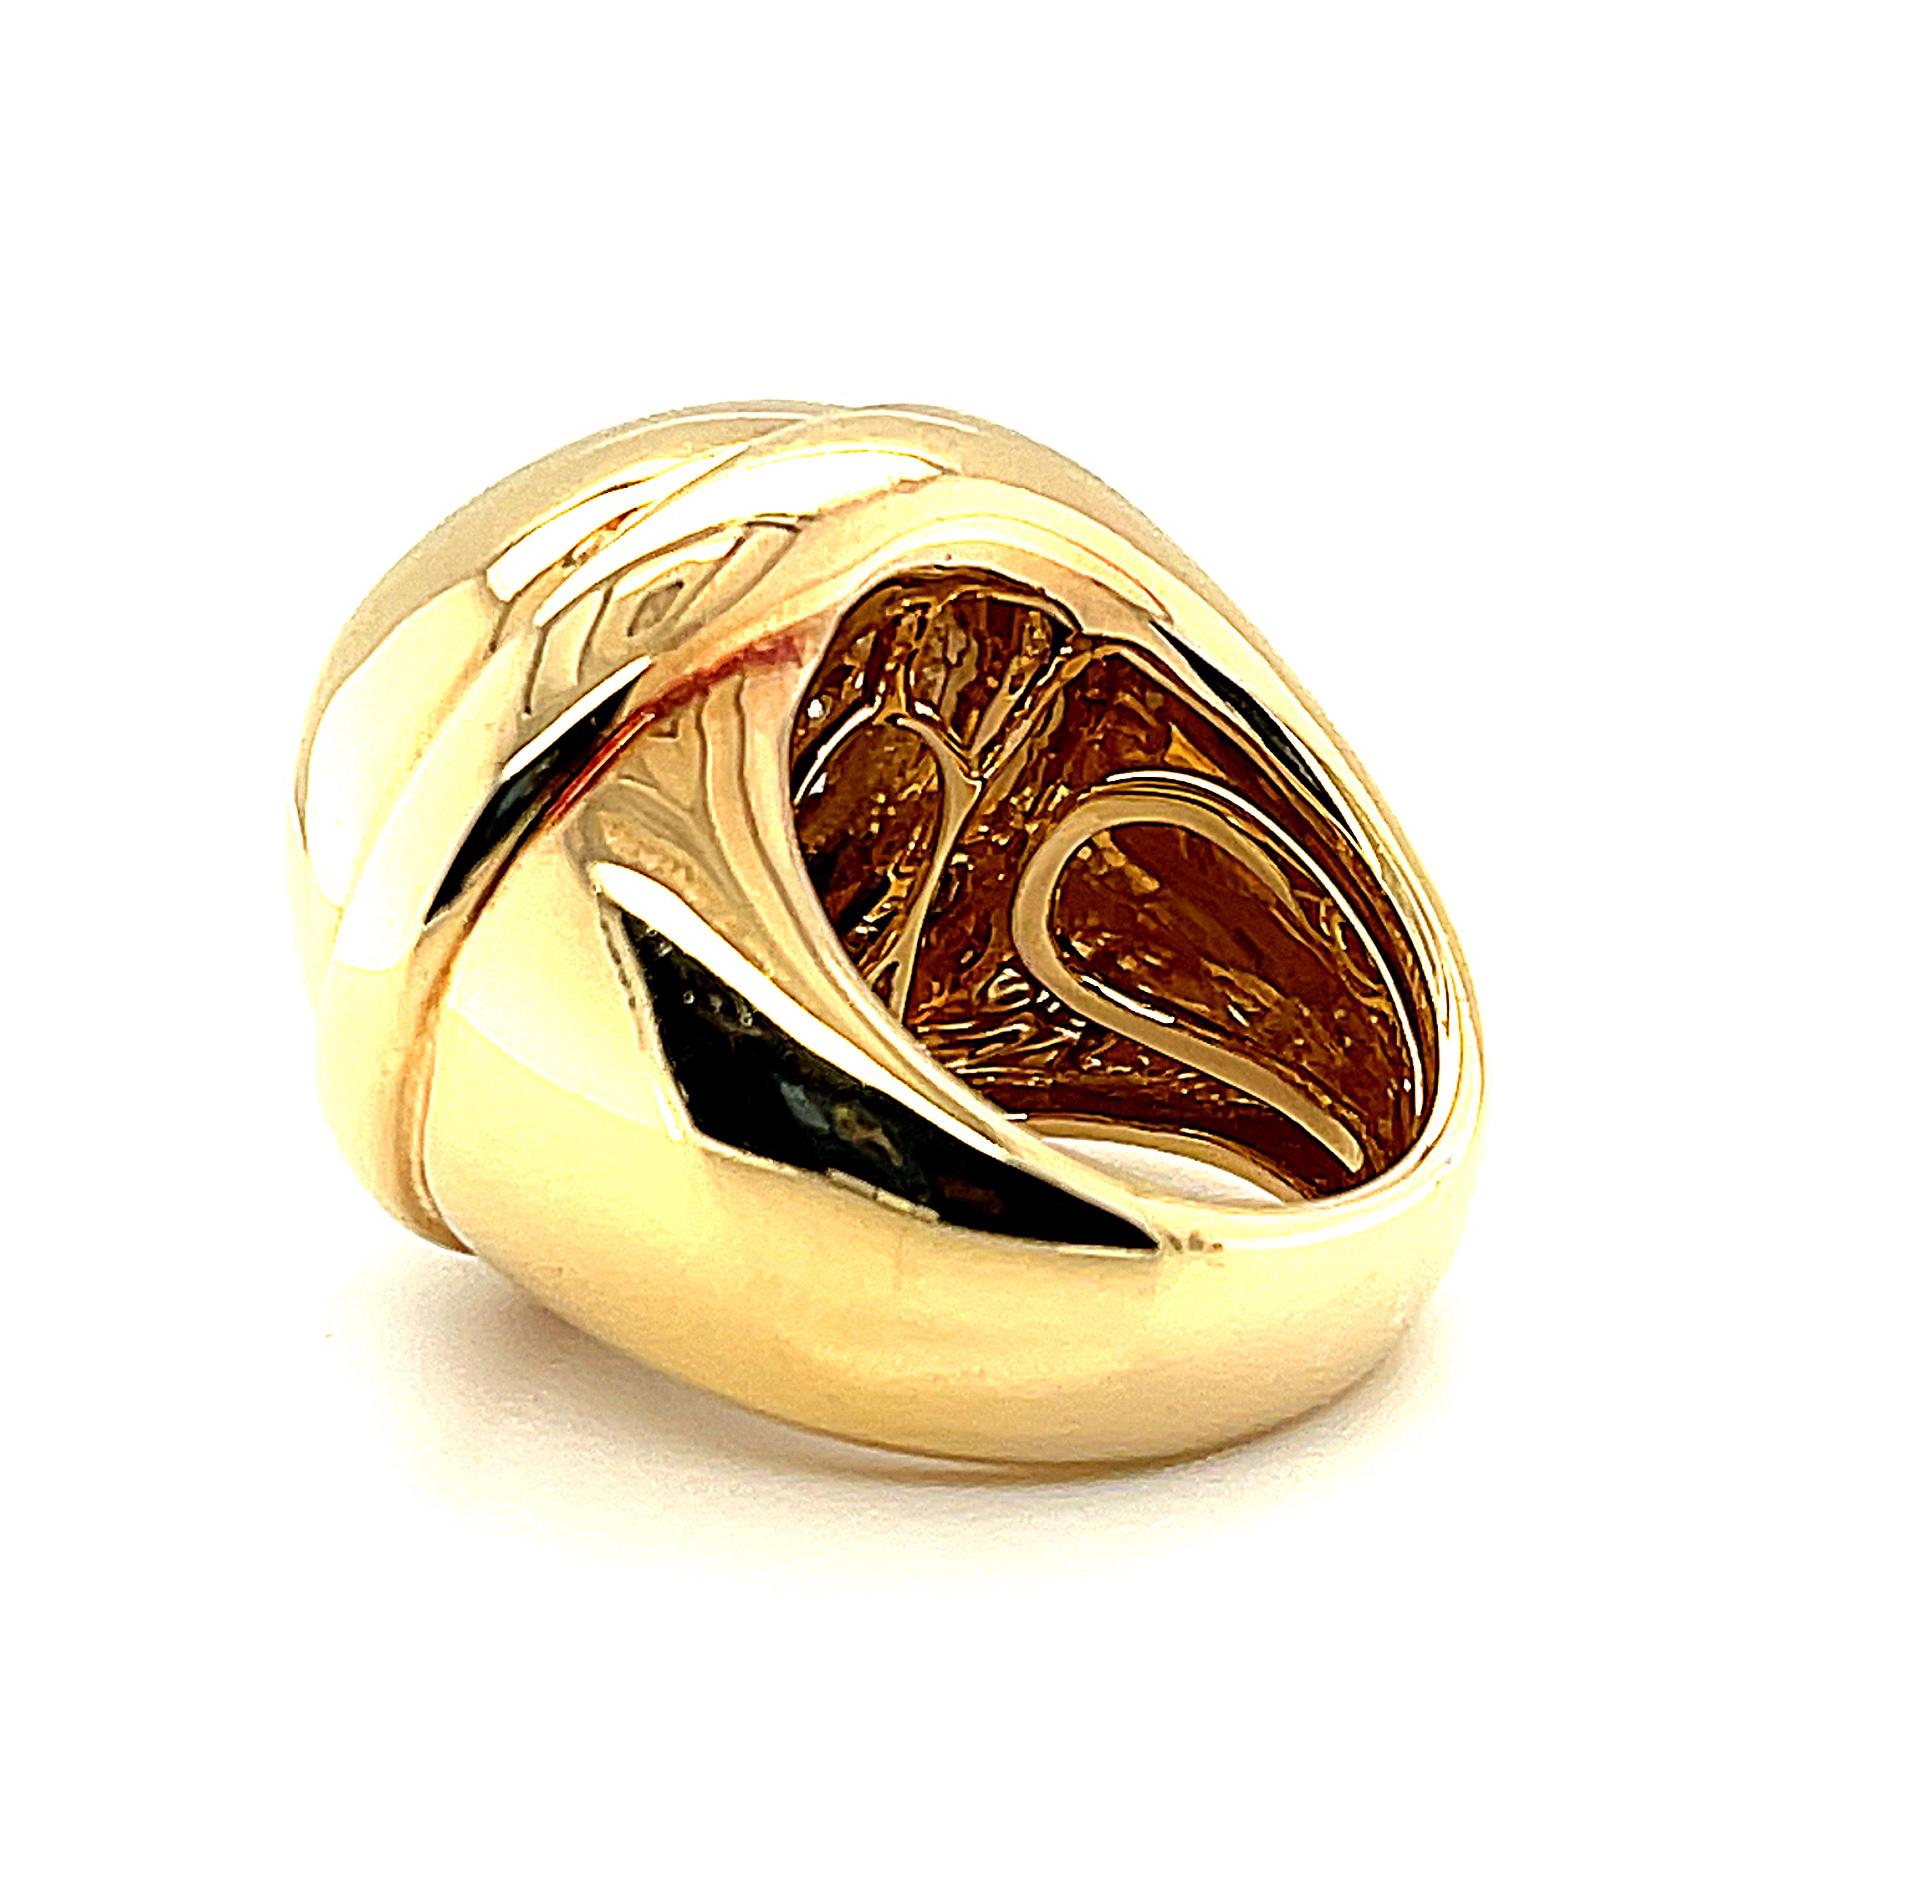 Dieser große und schöne Ring ist ein echter Hingucker! Er ist ein kühnes Statement aus 18 Karat Gelbgold, besetzt mit funkelnden runden Diamanten im Brillantschliff, die in einem dramatischen ovalen Muster gefasst sind. Die dramatische Form und das